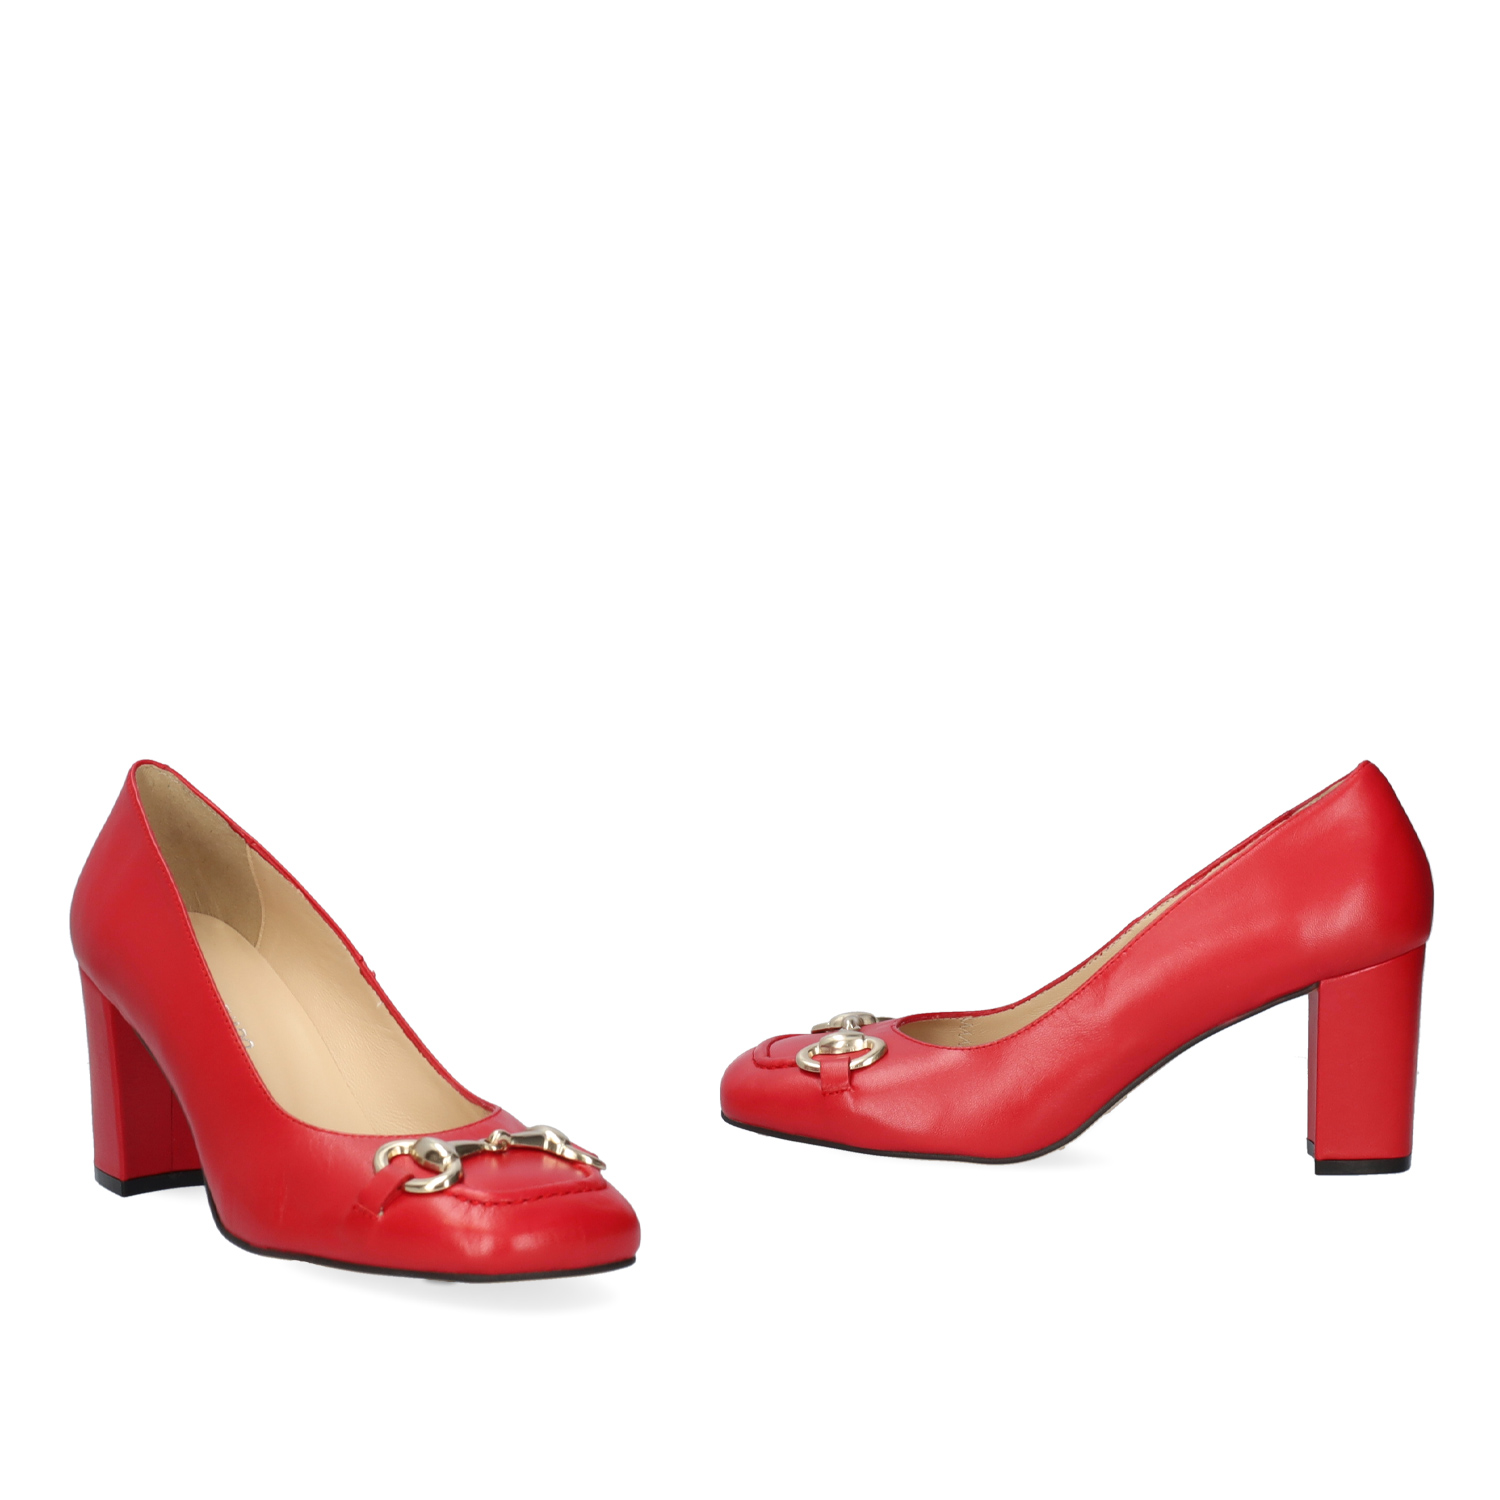 Chaussures talons en cuir rouge de style vintage. 